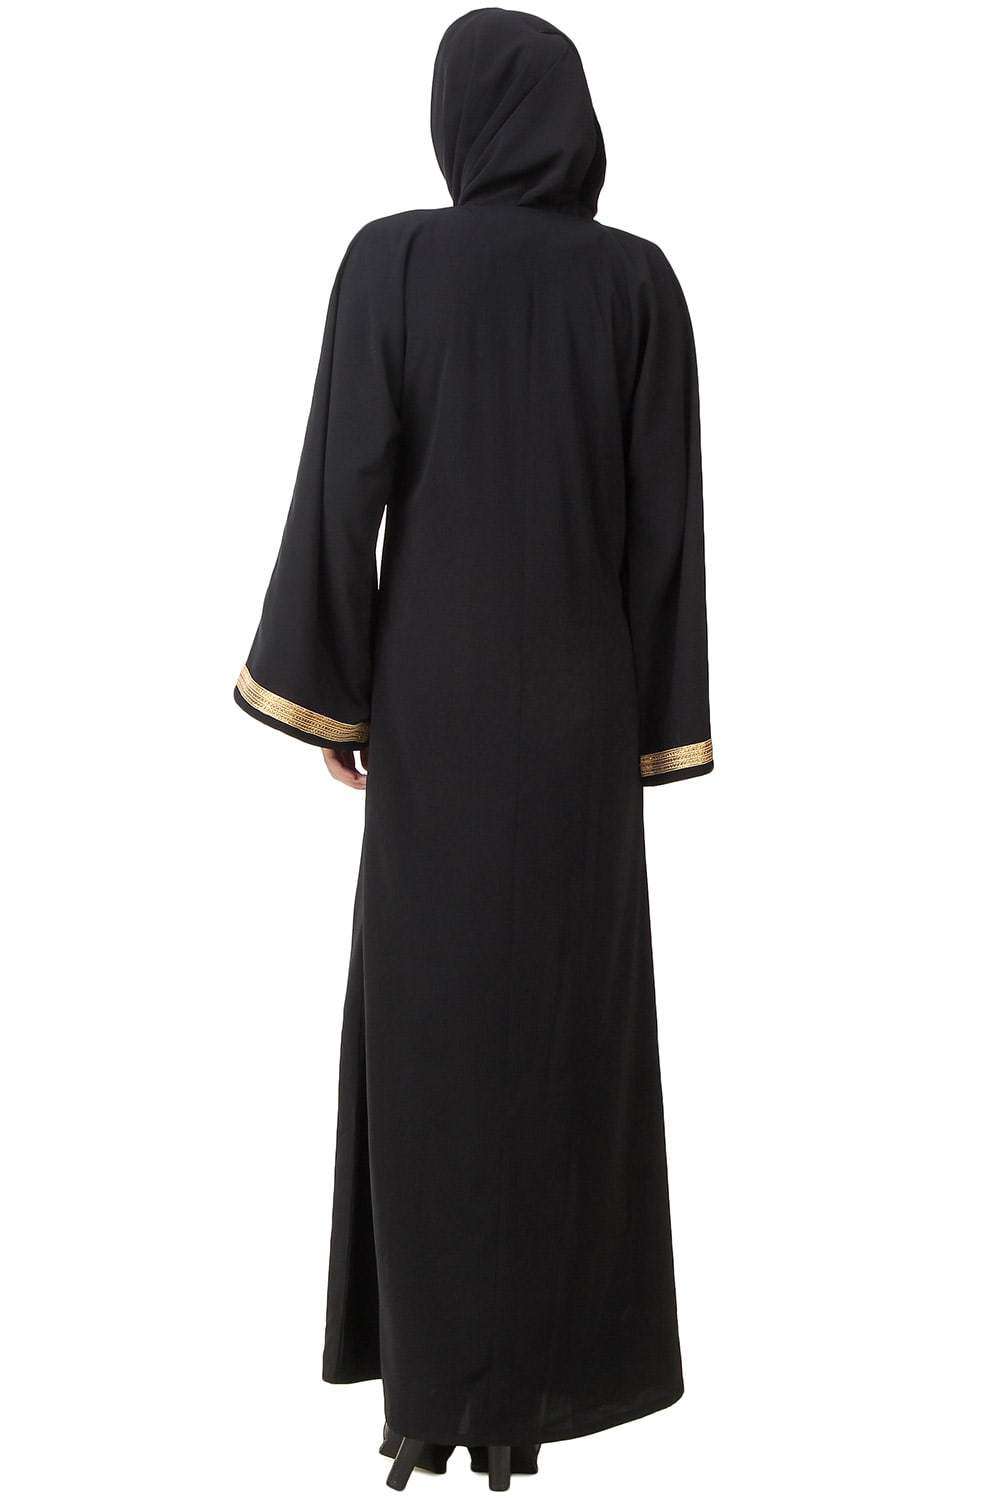 Rifaat Dubai Abaya